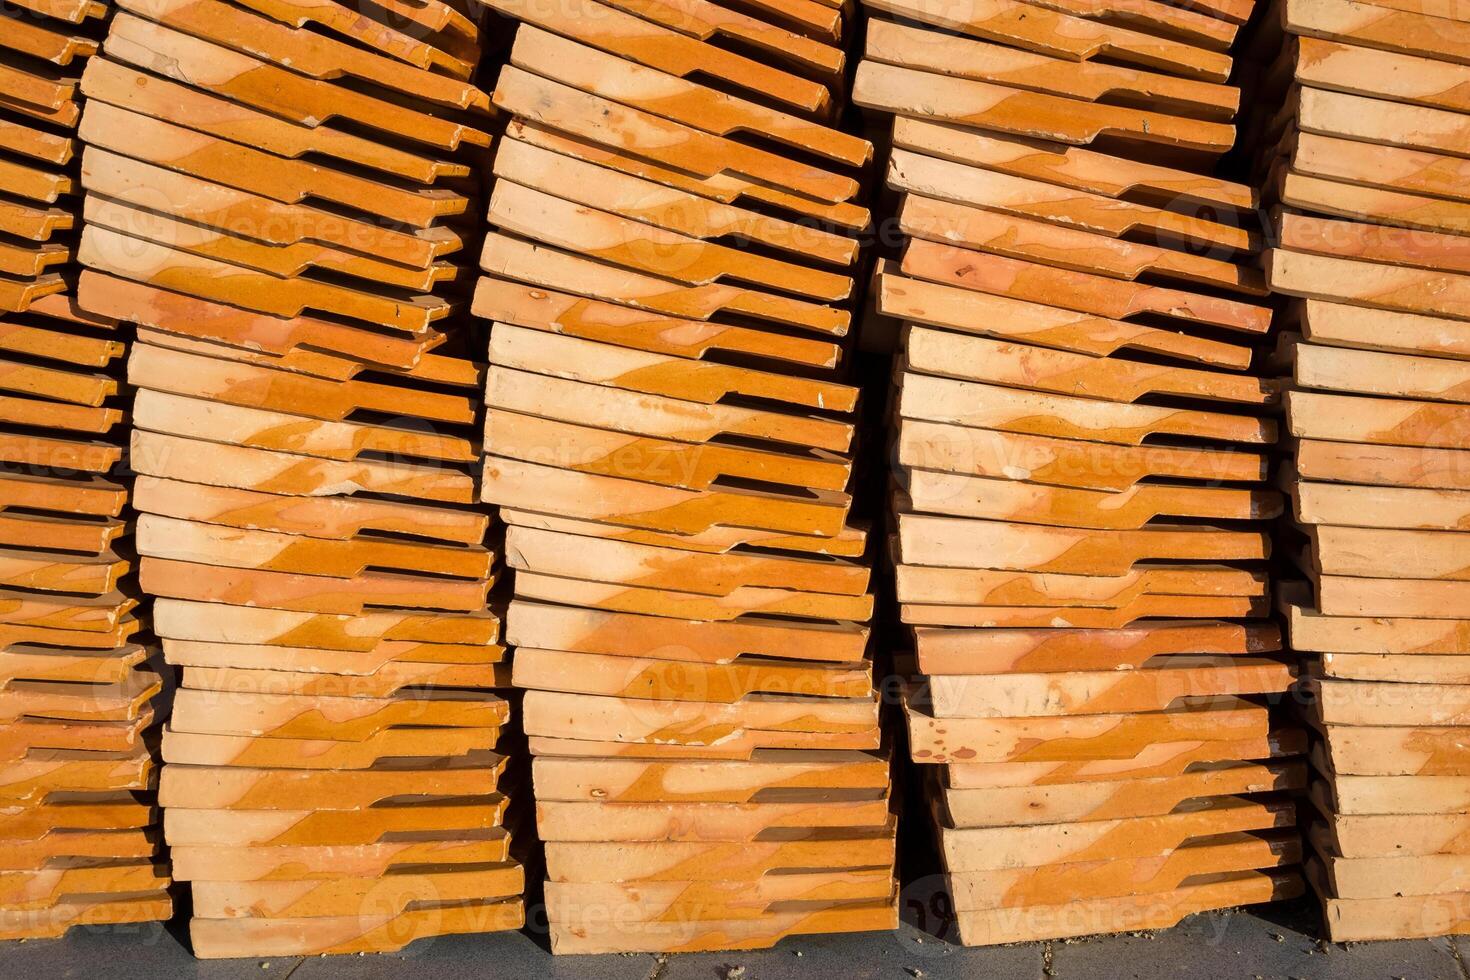 Clay tiles roof orange pile photo